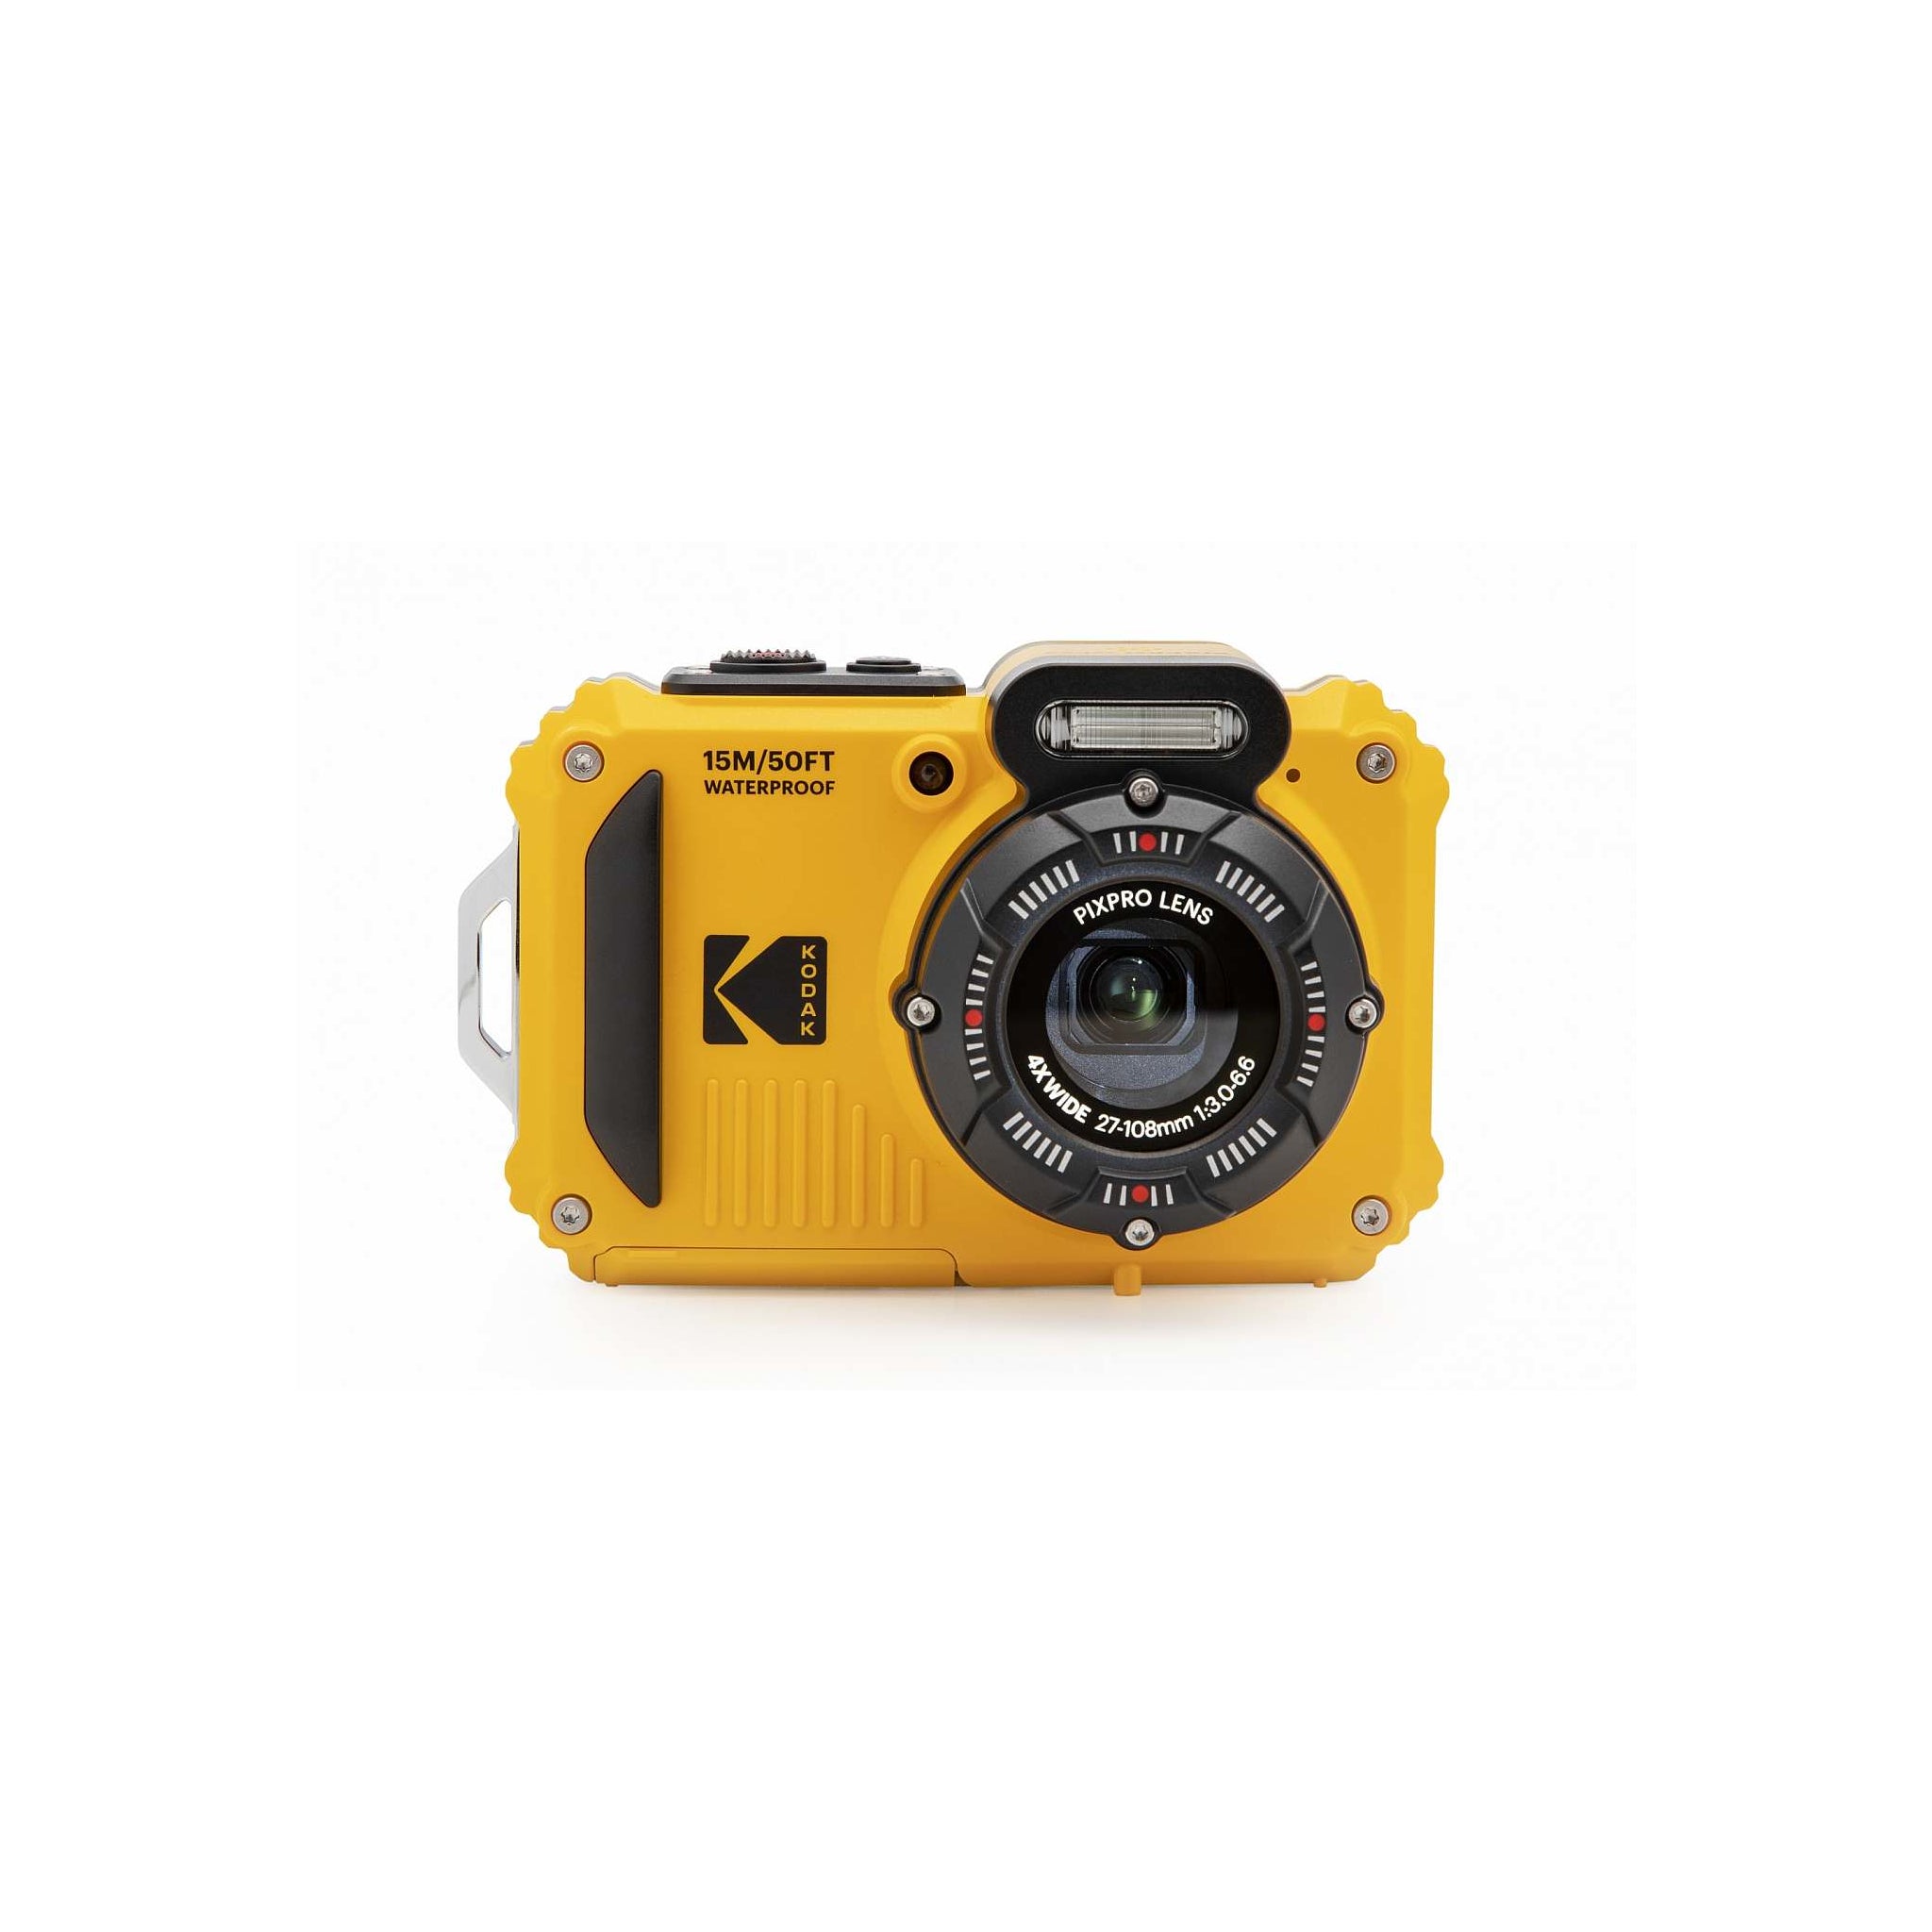 Kodak PIXPRO WPZ2 Full HD Rugged Waterproof Digital Camera, 16MP